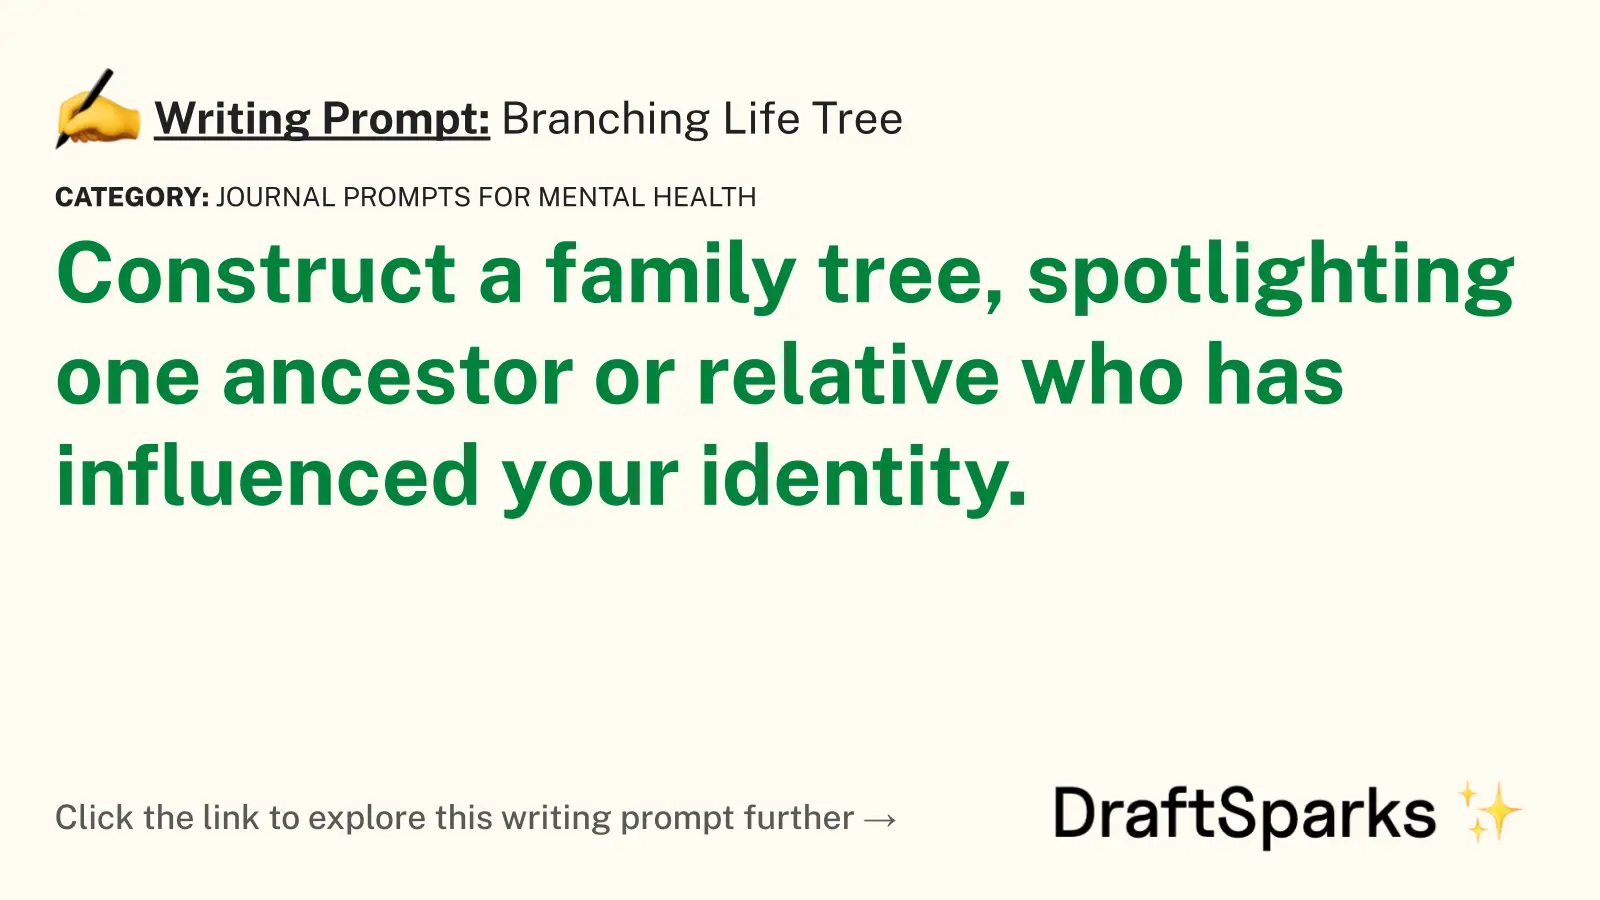 Branching Life Tree